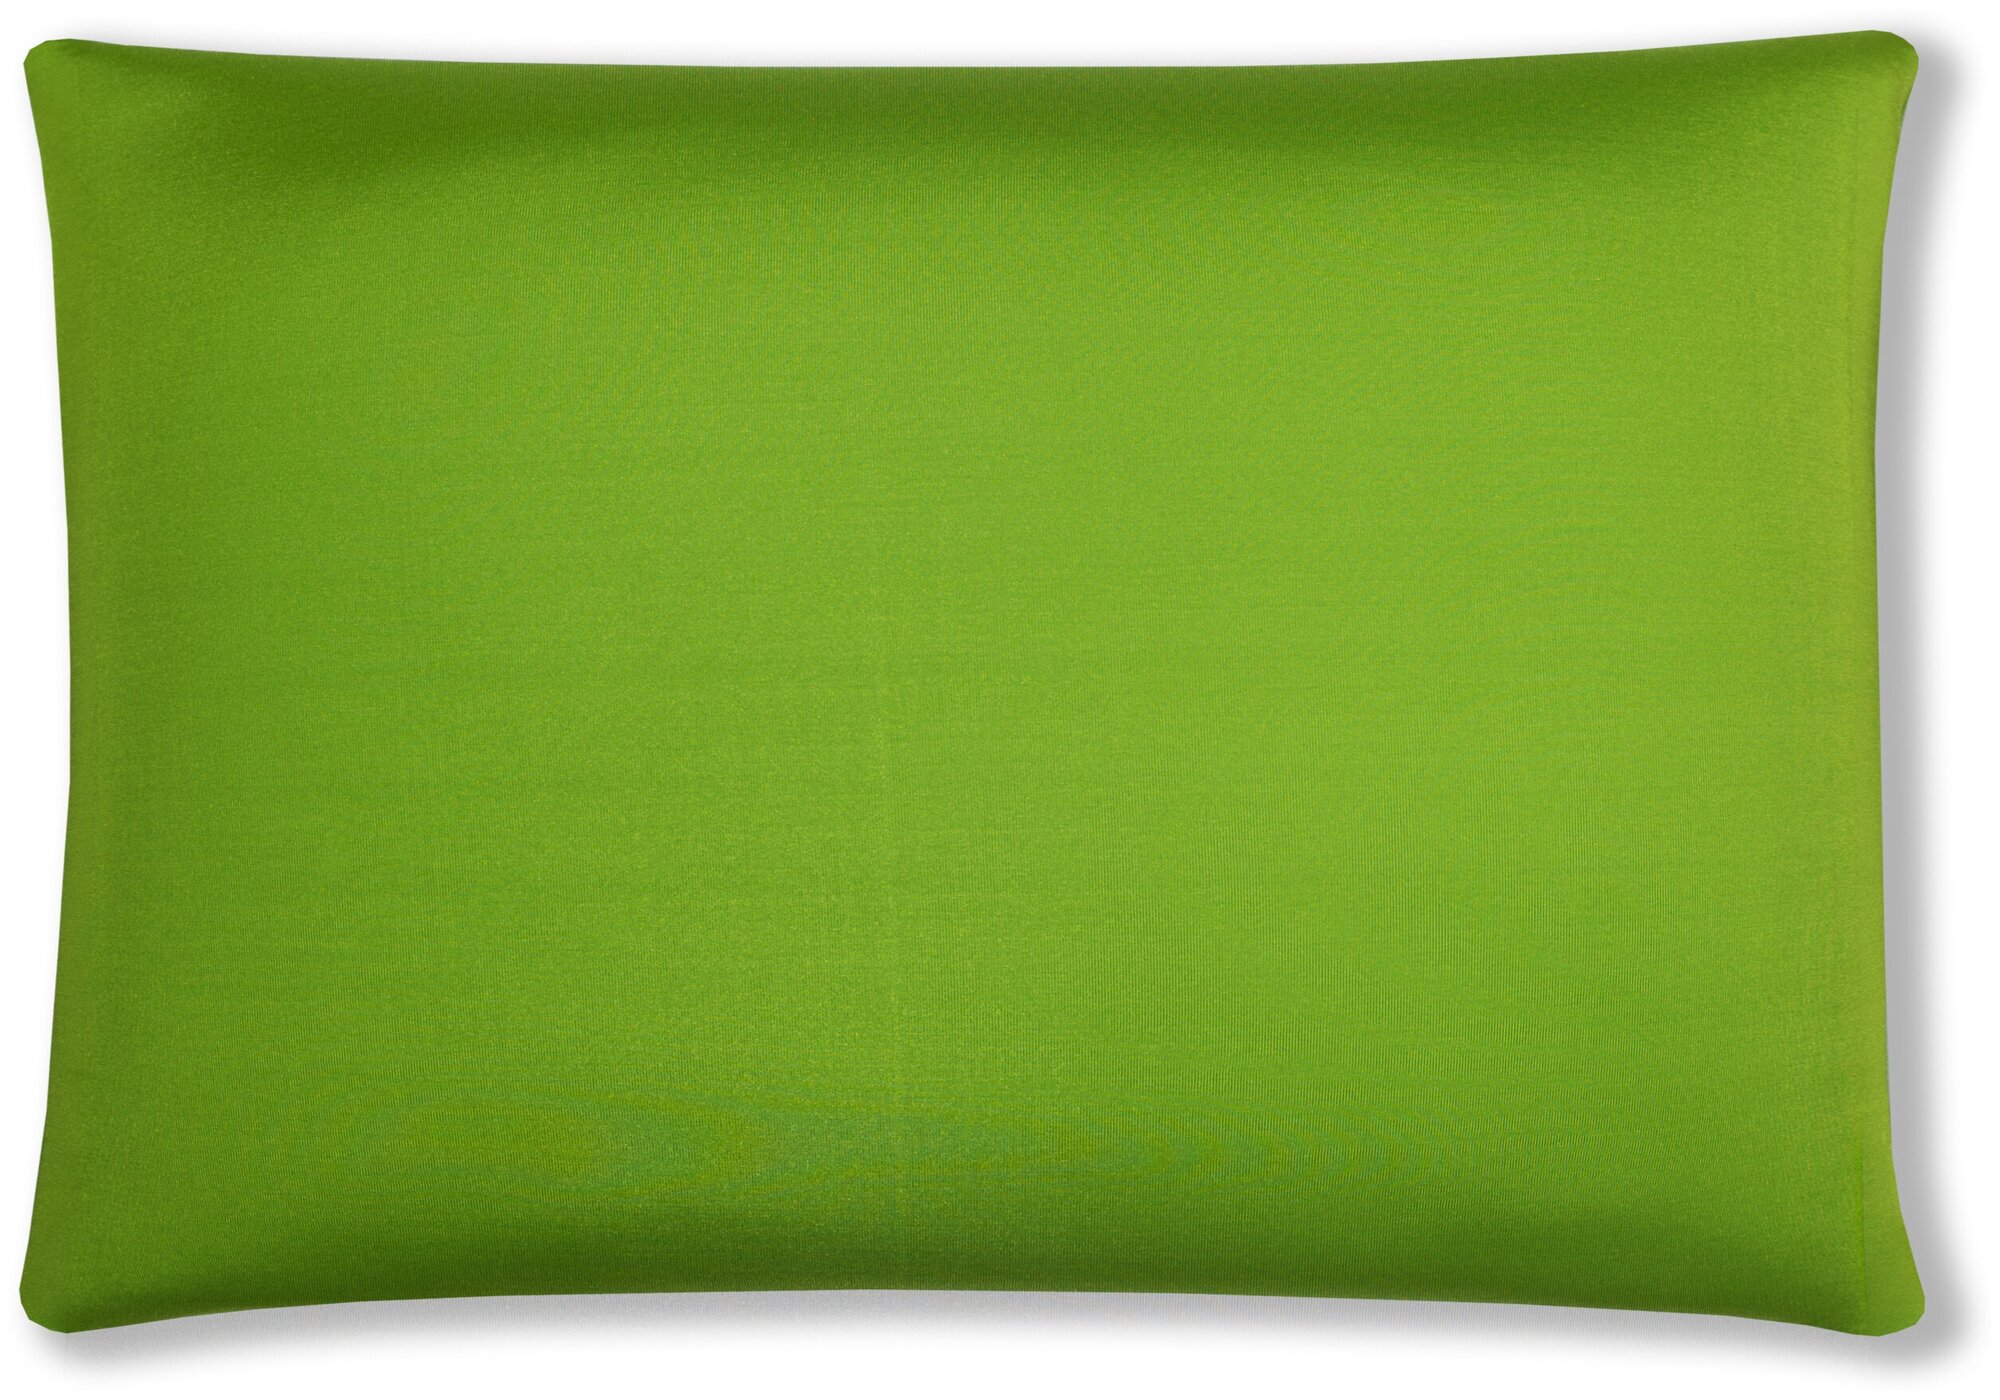 Мягкая подушка - антистресс в подарок Штучки, к которым тянутся ручки Дачница, зеленый